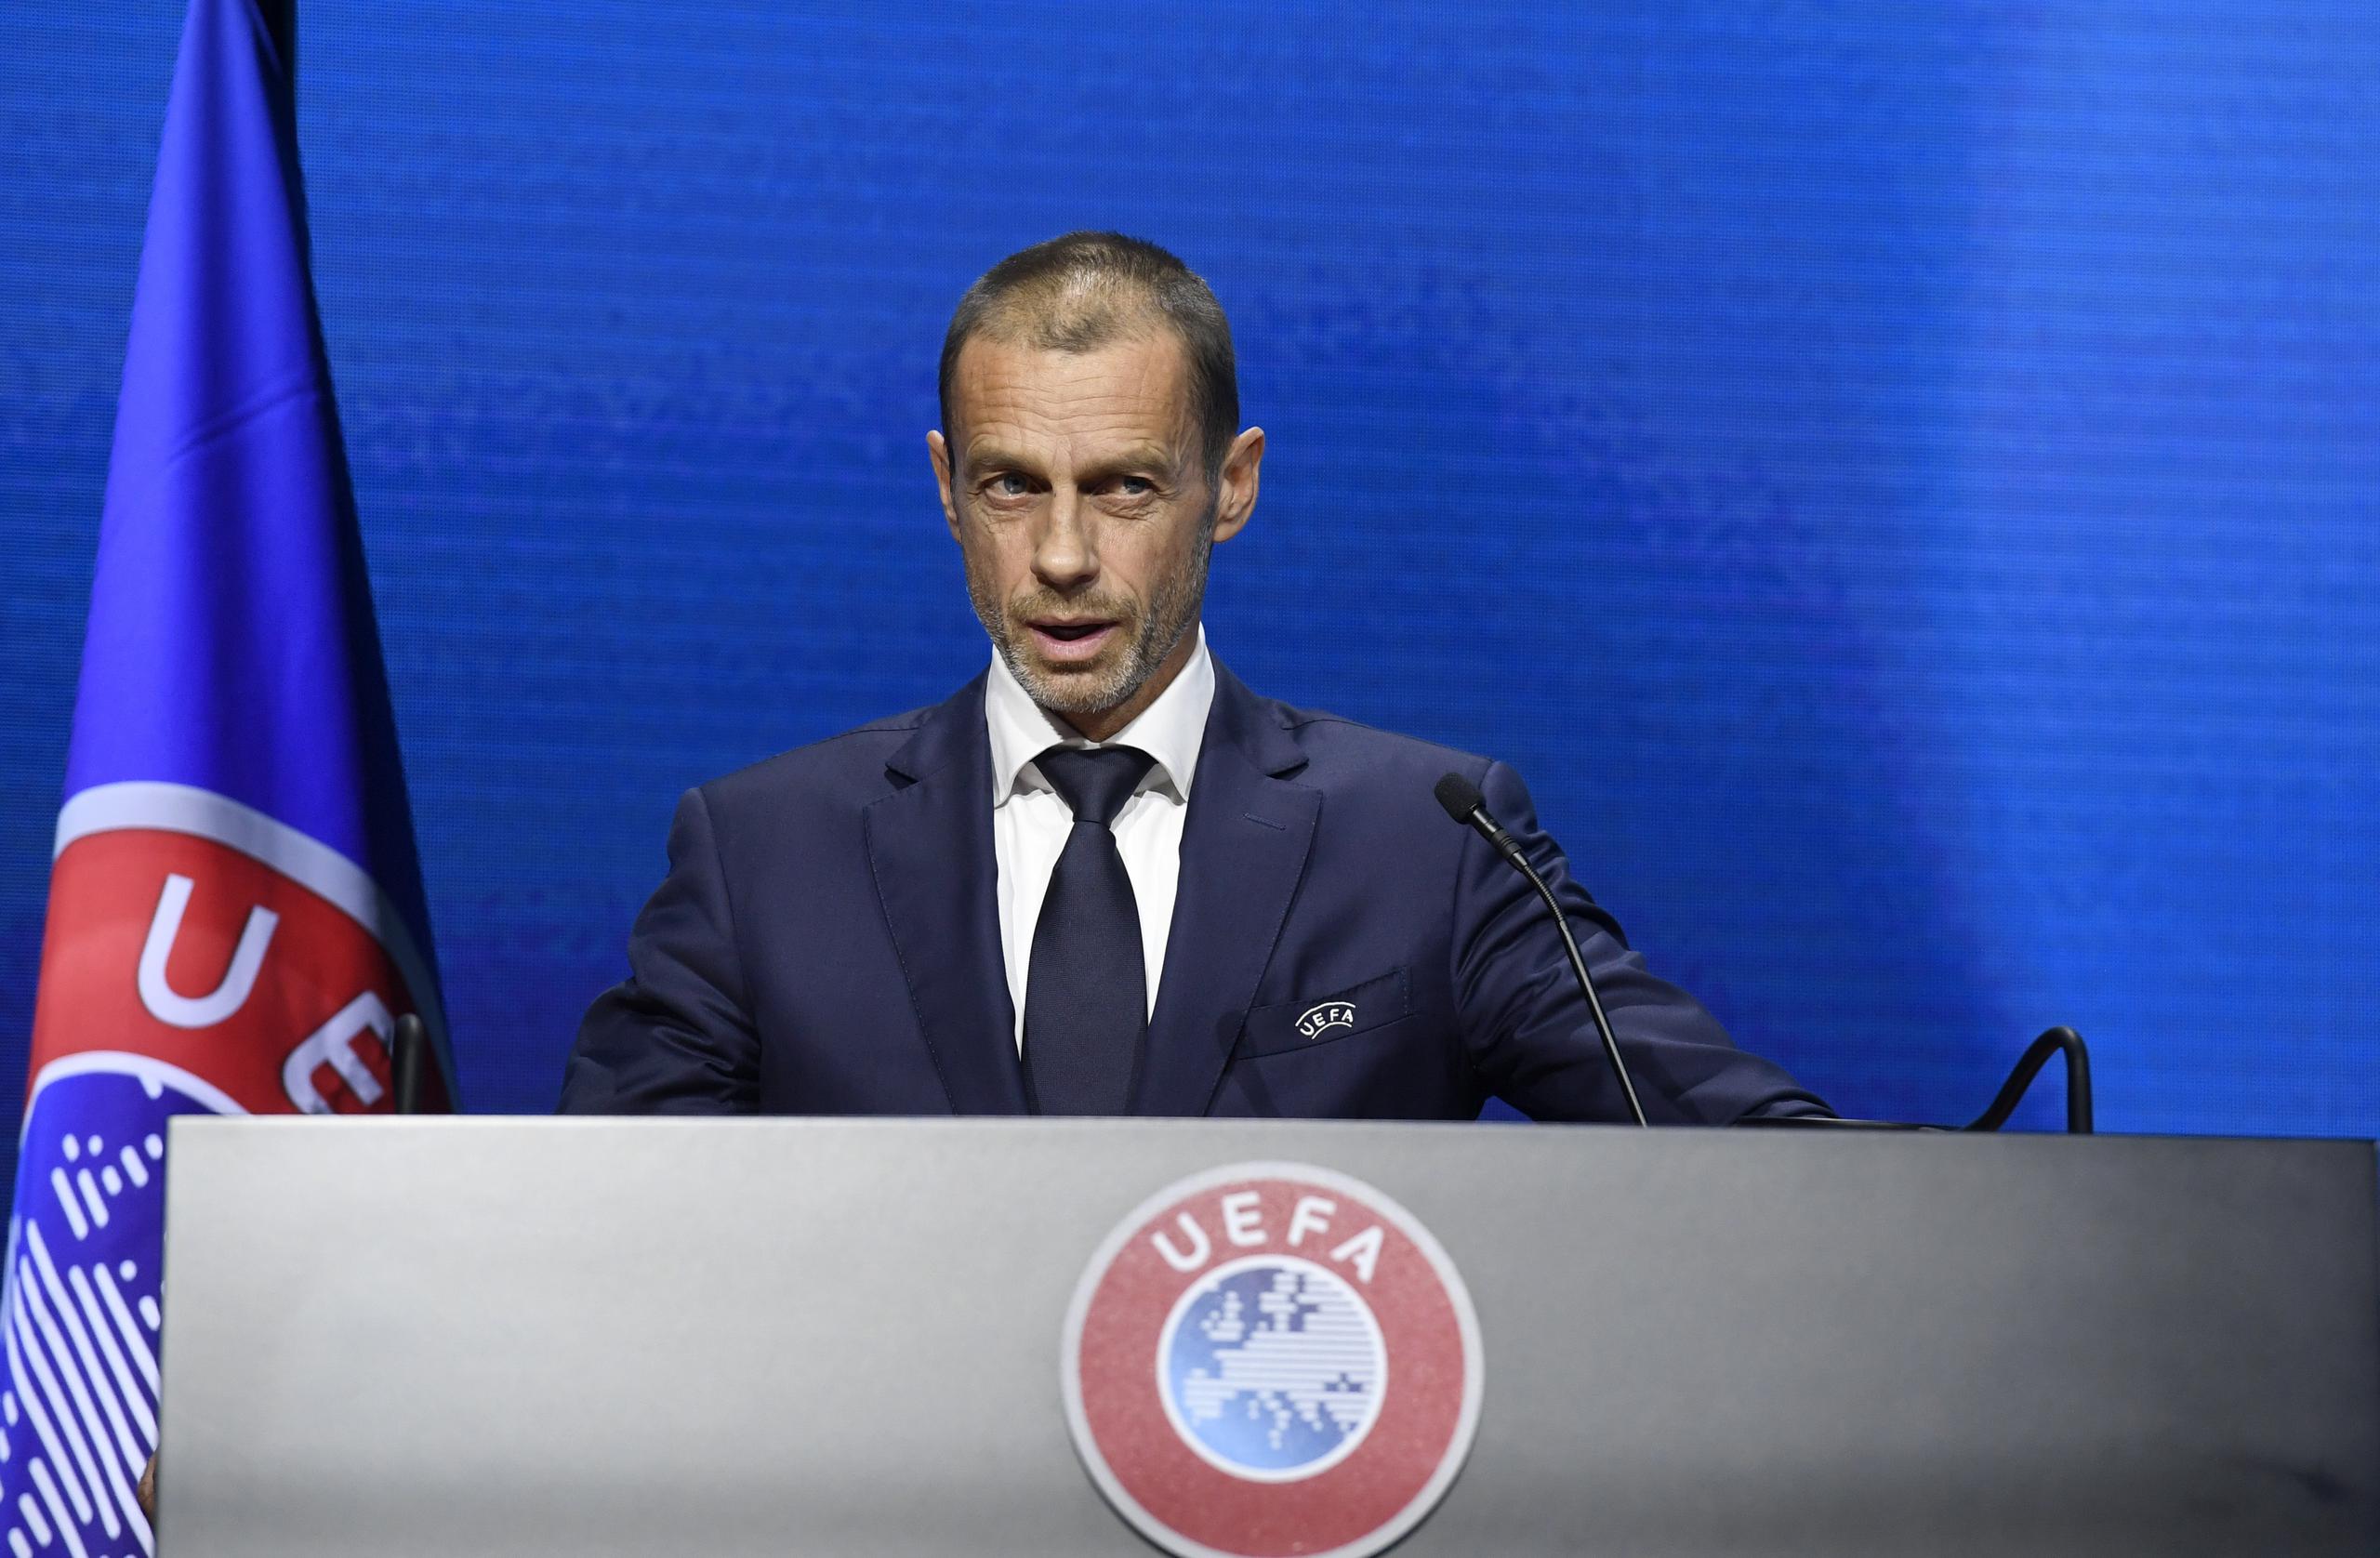 El presidente de la UEFA, Aleksander Ceferin, criticó al grupo de clubes ingleses menos de 48 horas después del lanzamiento de la Superliga junto a tres clubes de España y otros tantos de Italia.